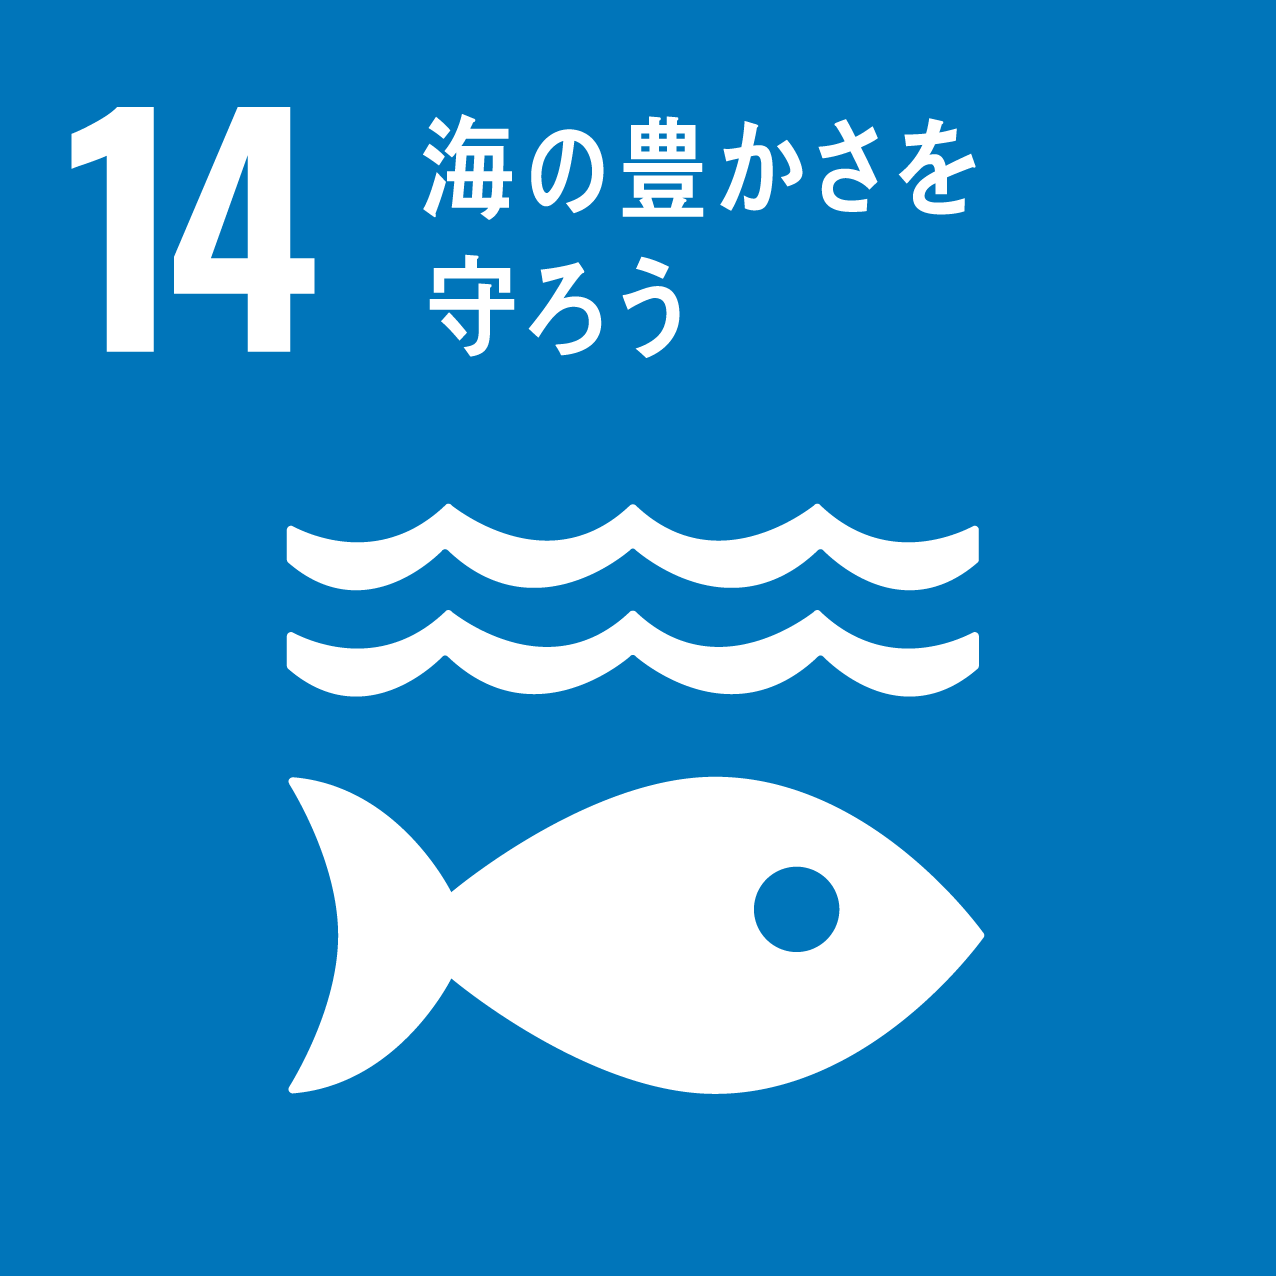 目標 14 : 海の豊かさを守ろう